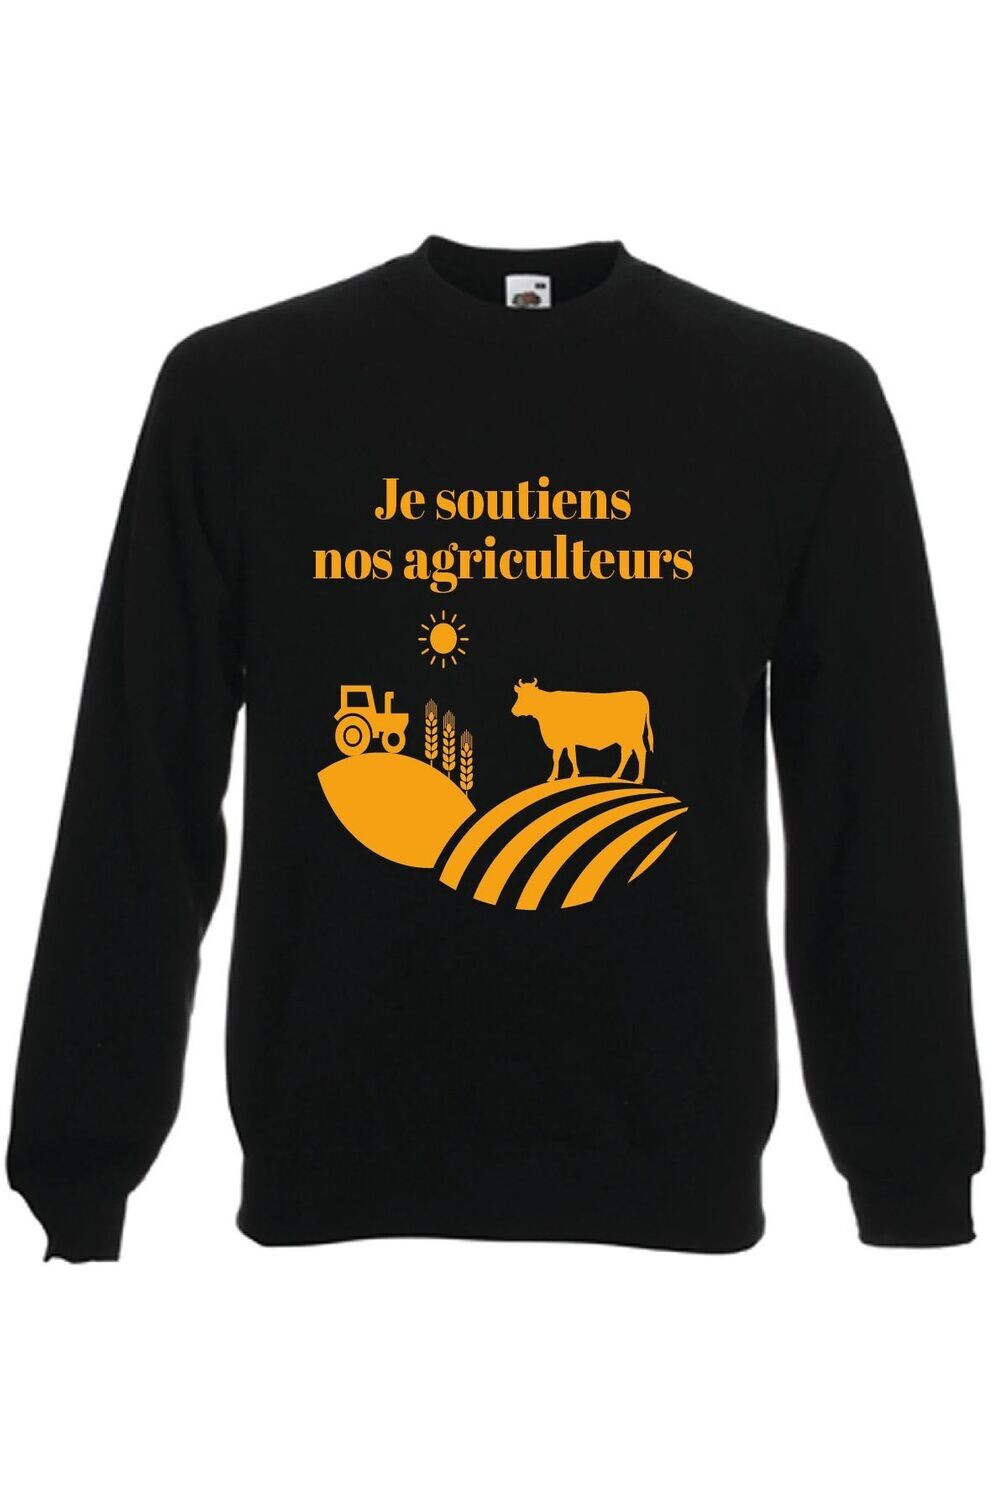 Sweat-shirt manches raglan NOIR Je soutiens nos agriculteurs